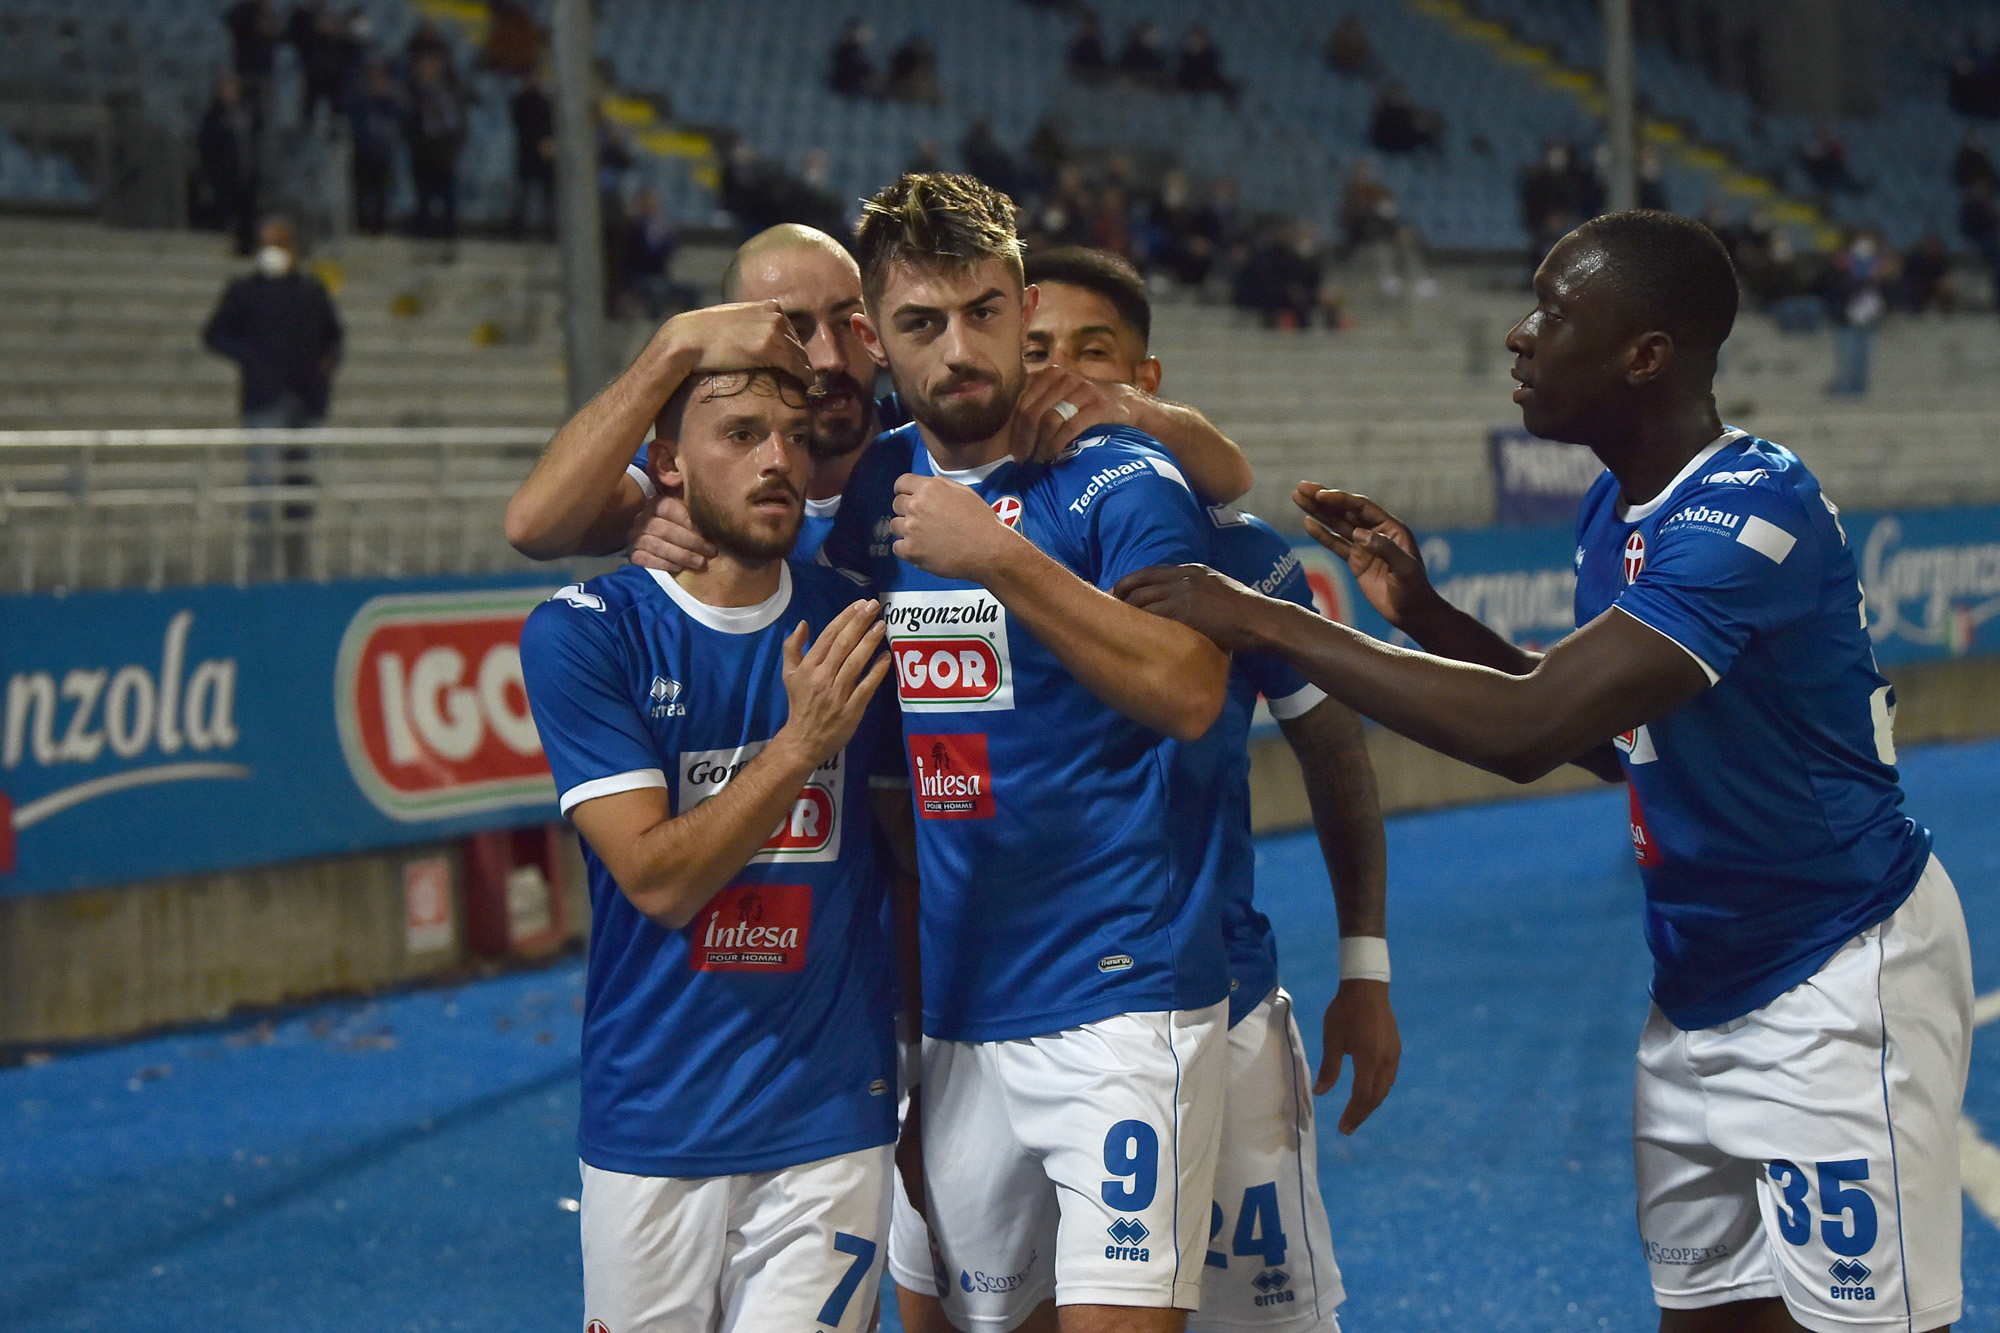 Read more about the article Novara-Borgosesia 2-0 | Tabellino del match